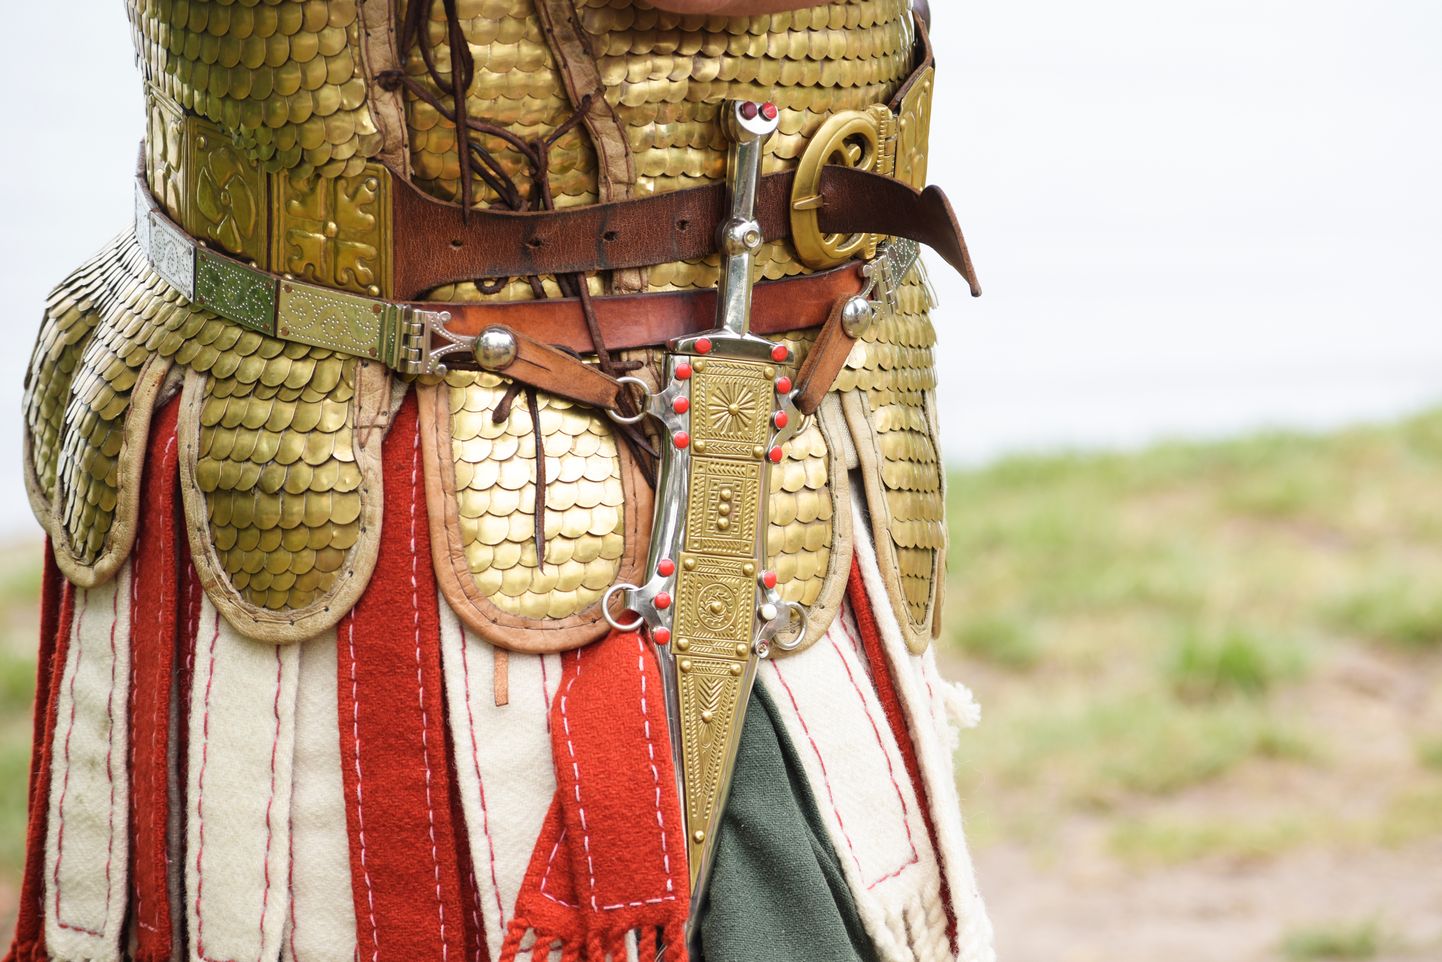 Vana-Rooma leegionäri vööl rippus lisarelvana pistoda. Pilt on illustreeriv